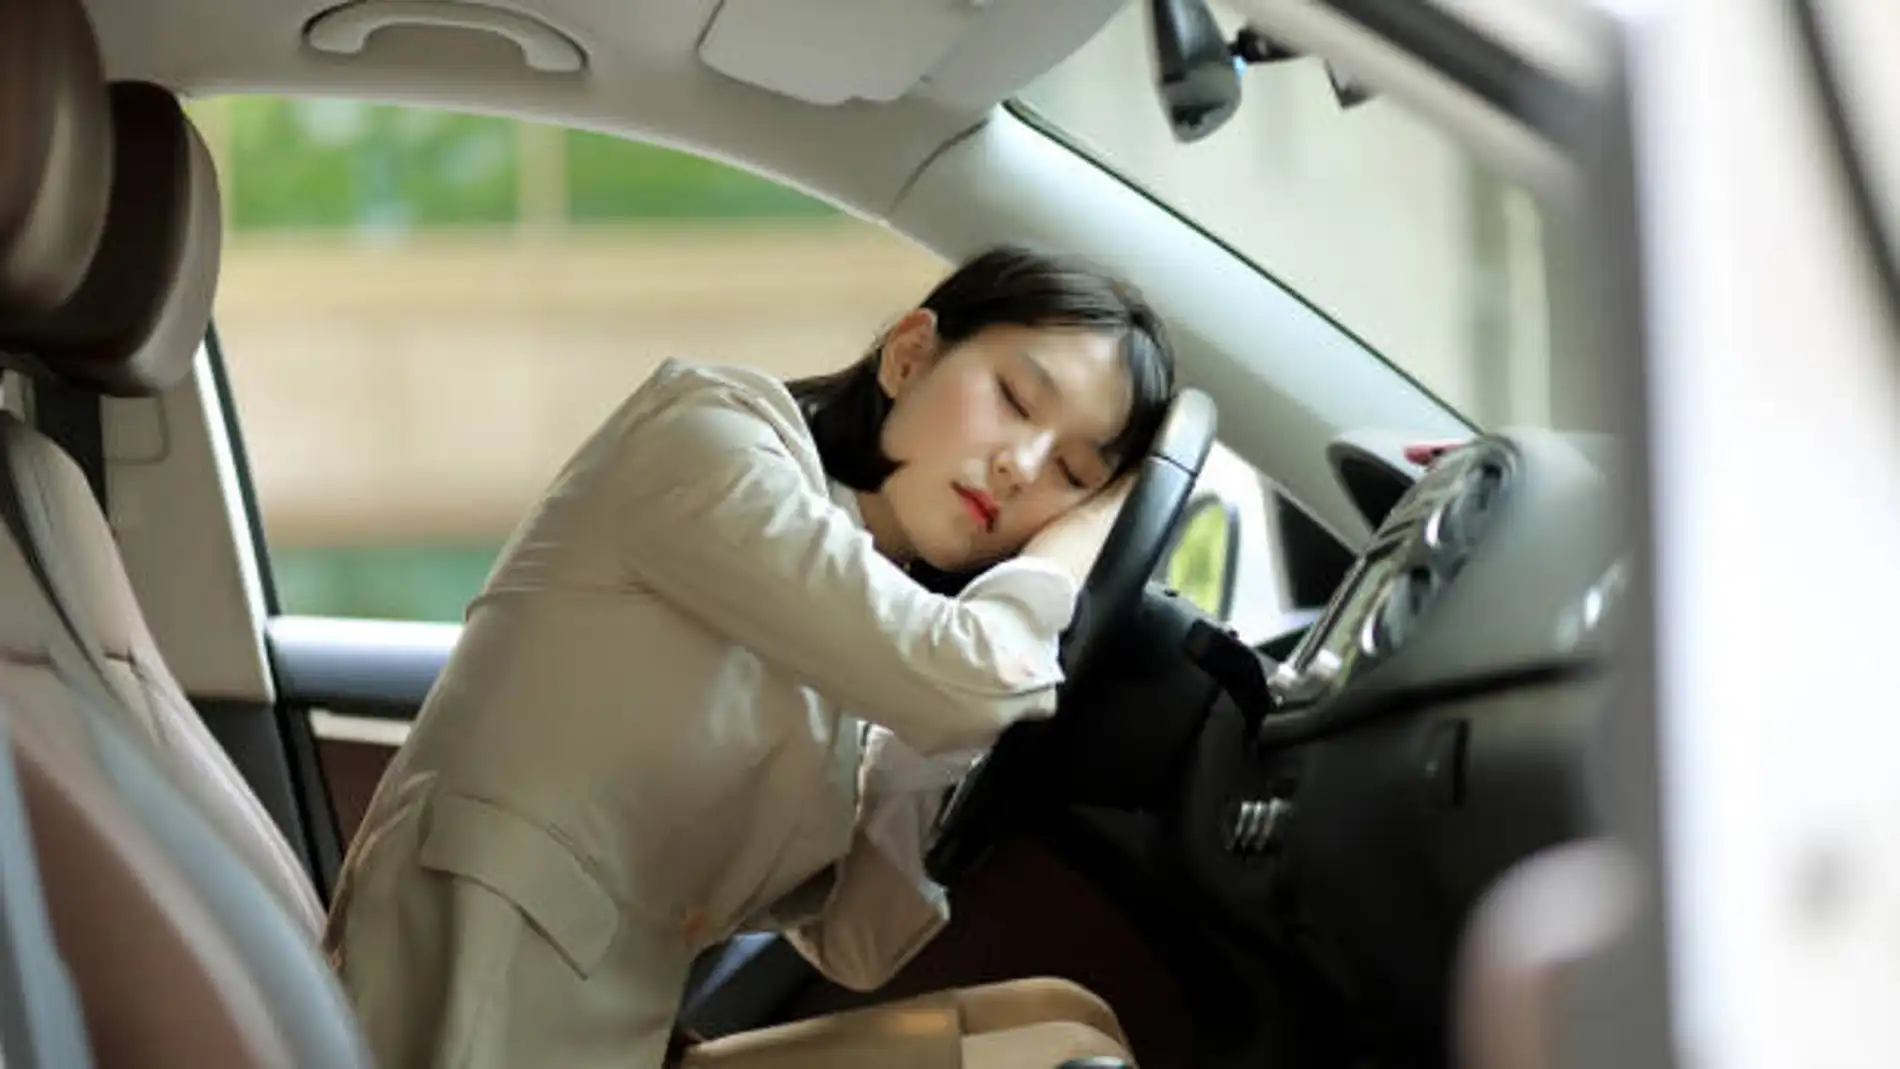 Se puede dormir en el coche?: cómo evitar multas con estos consejos